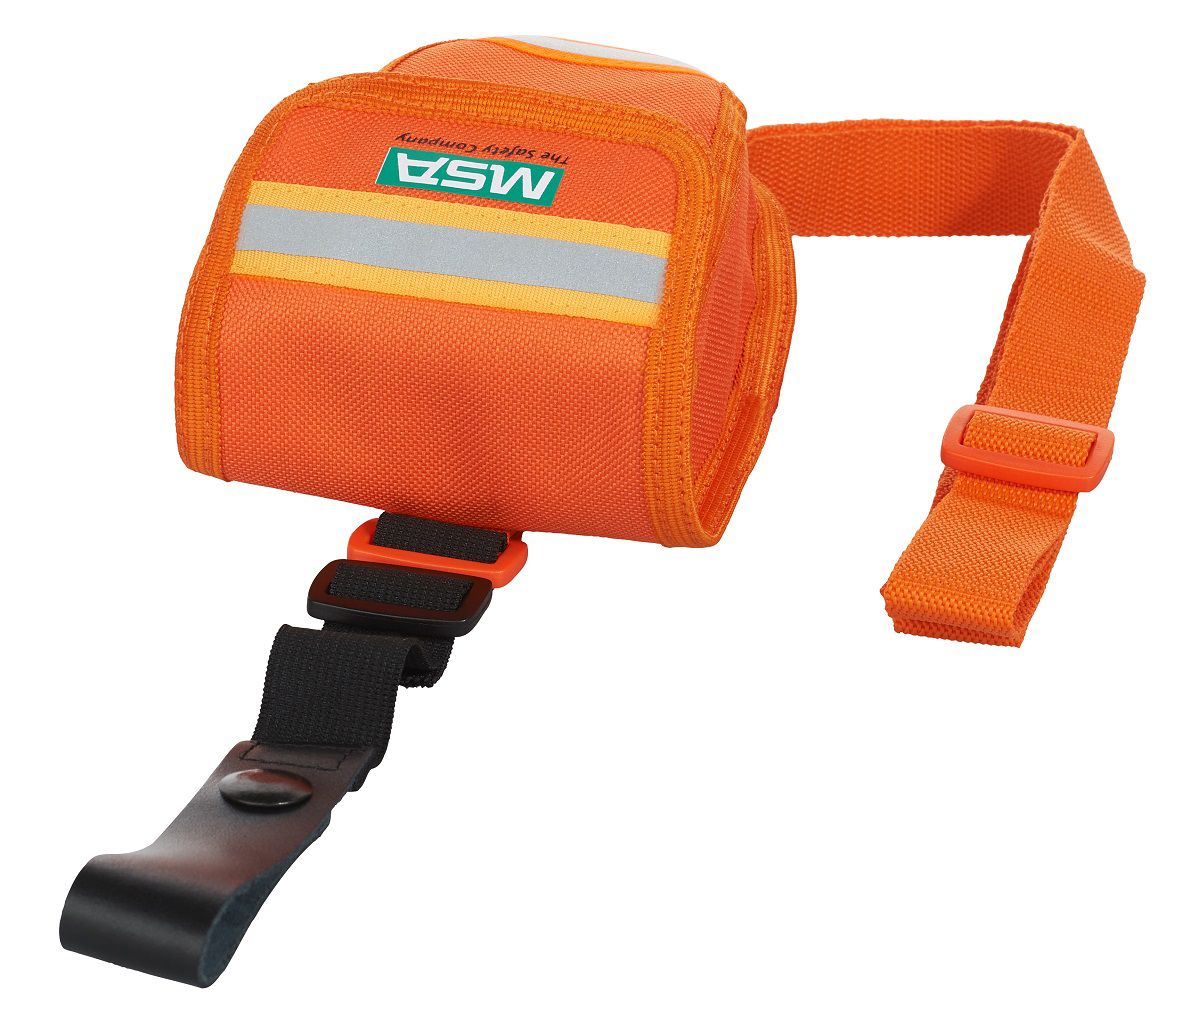 MSA Tasche orange - für MiniSCAPE Kurzzeit-Fluchtfiltergerät - als Hüft- oder Schultertasche verwendbar